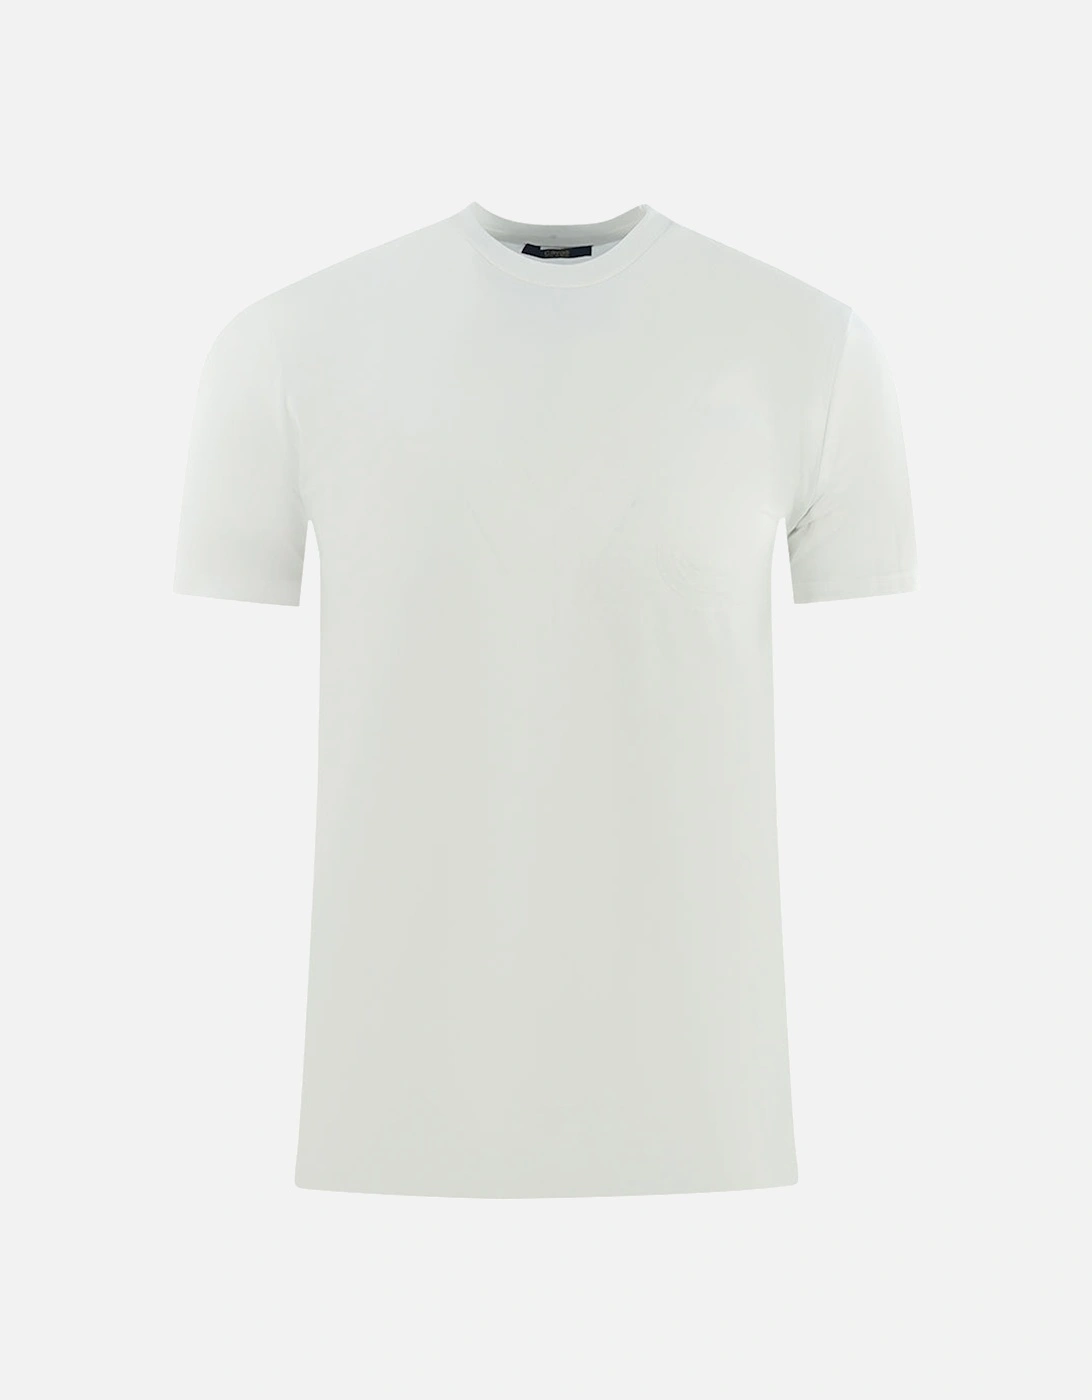 Brand Logo on Collar White Underwear T-Shirt, 3 of 2